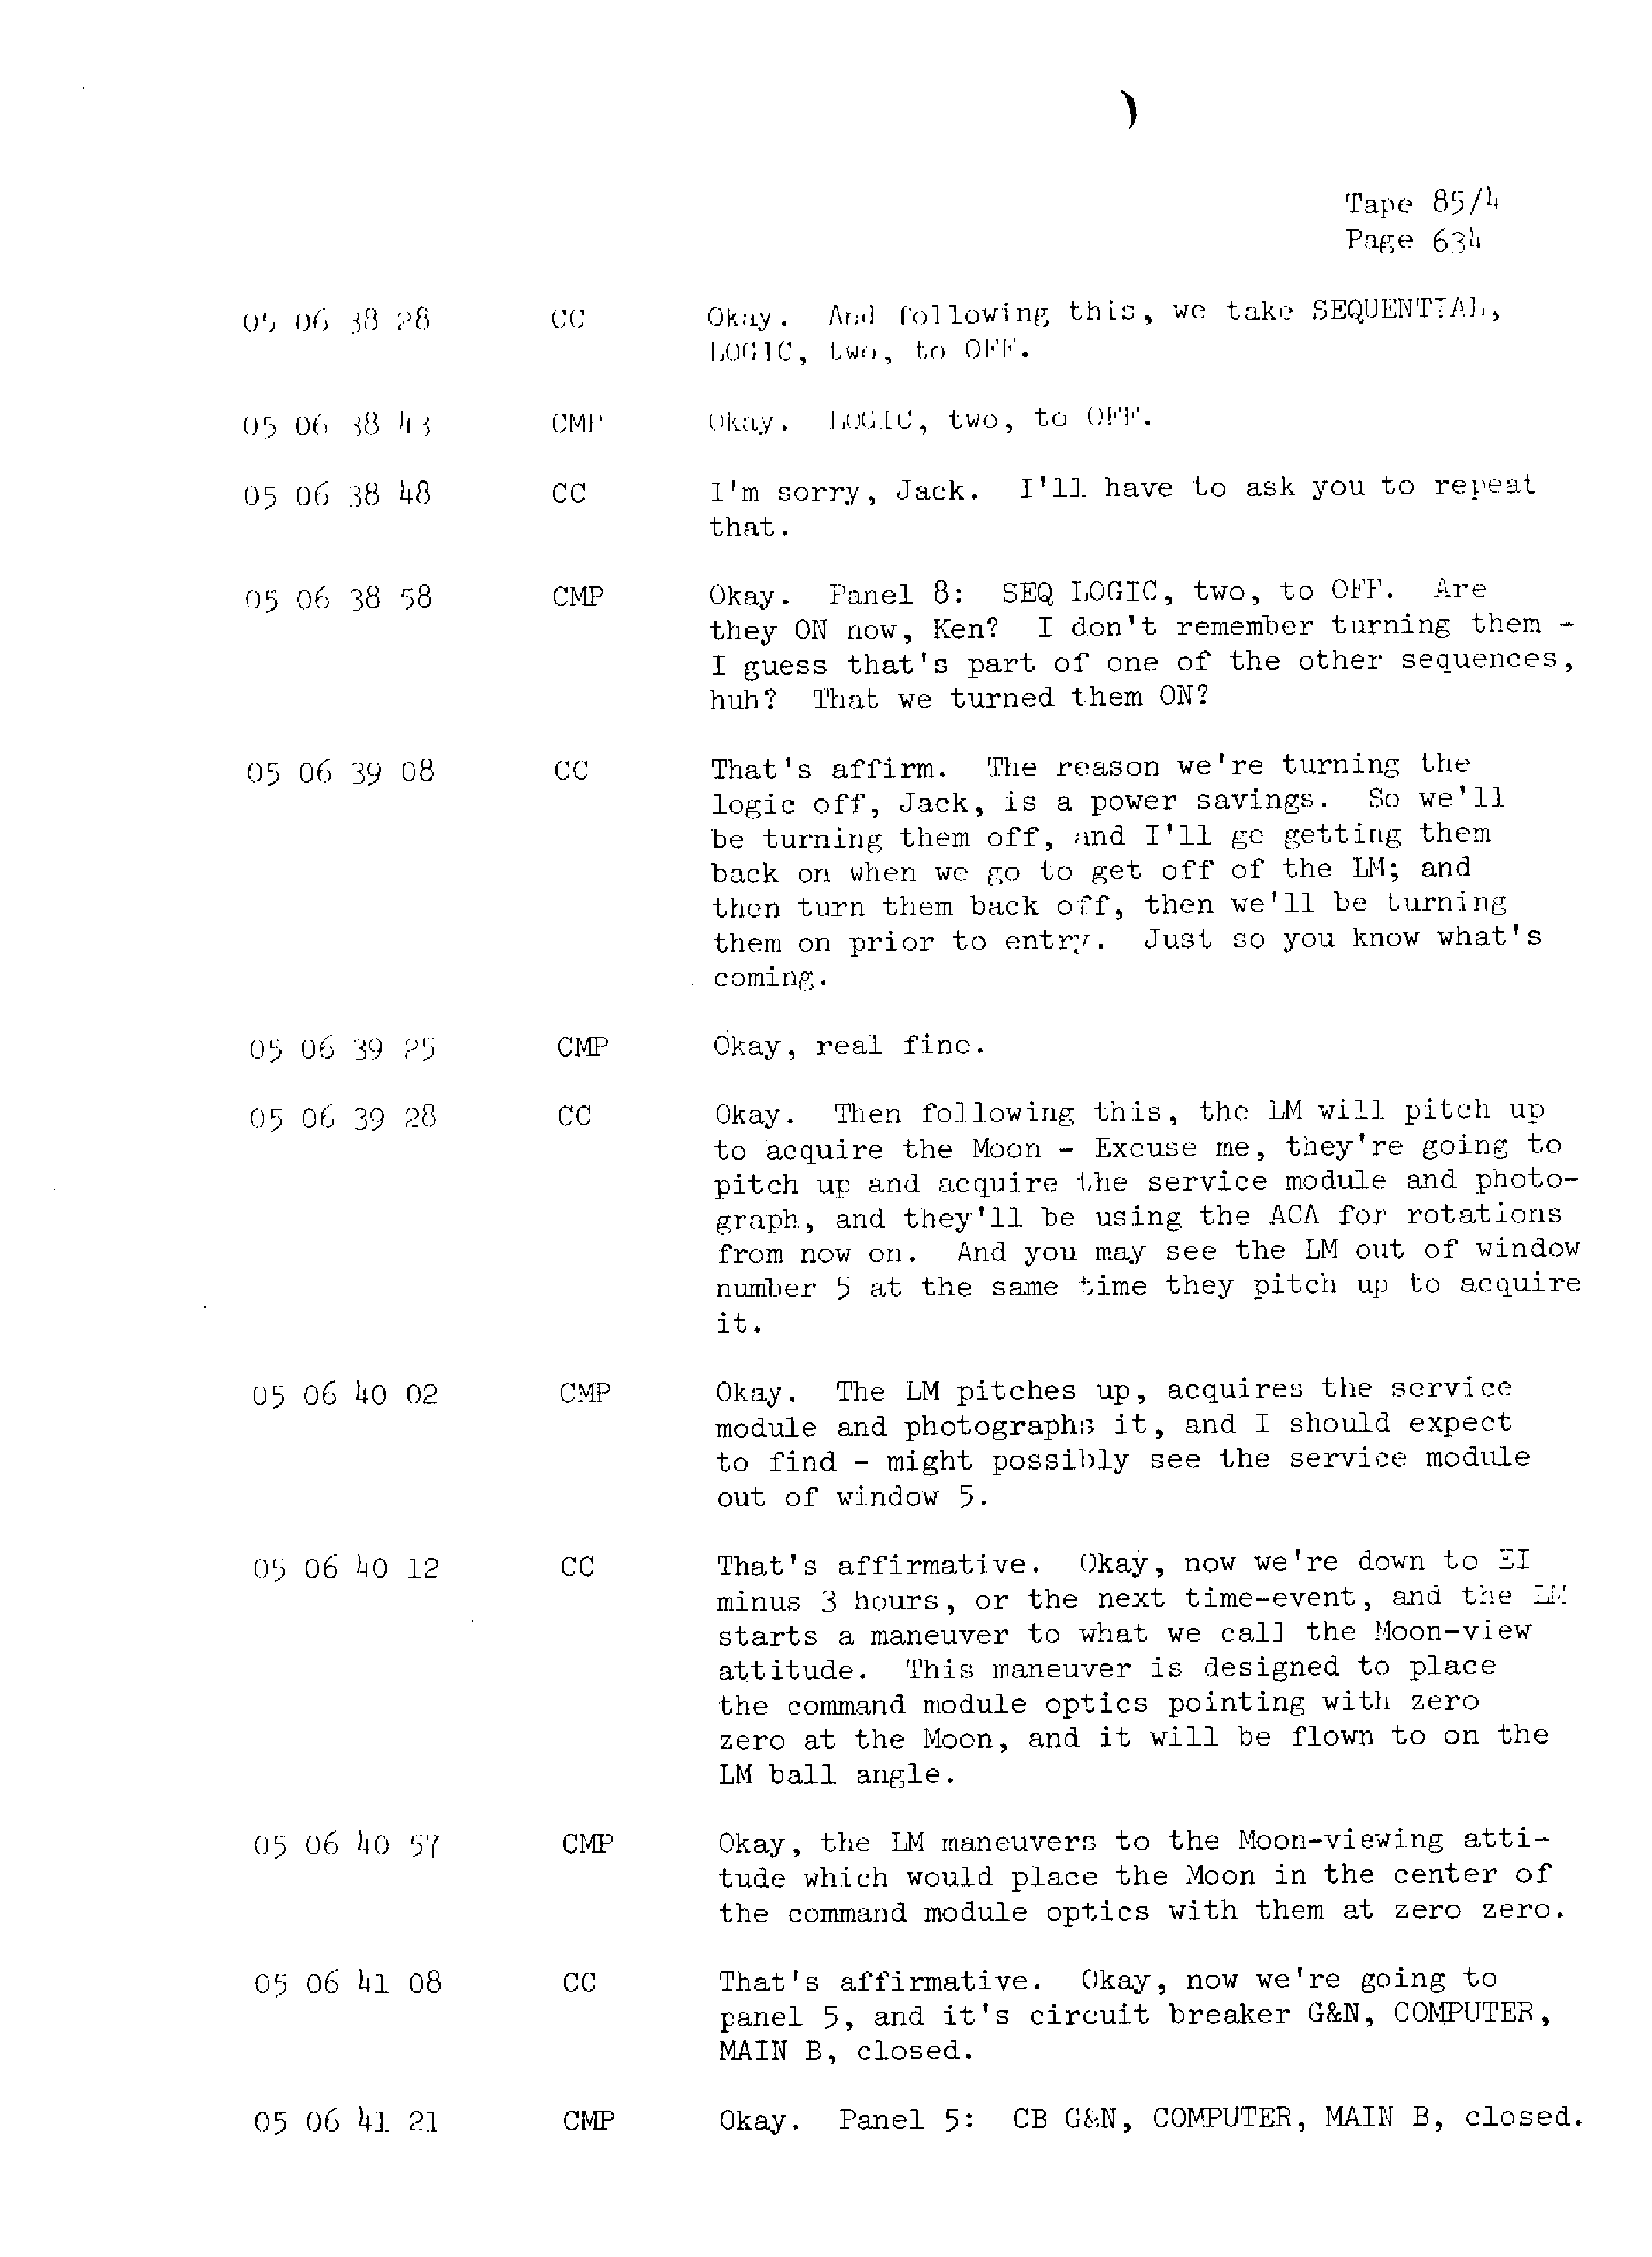 Page 641 of Apollo 13’s original transcript